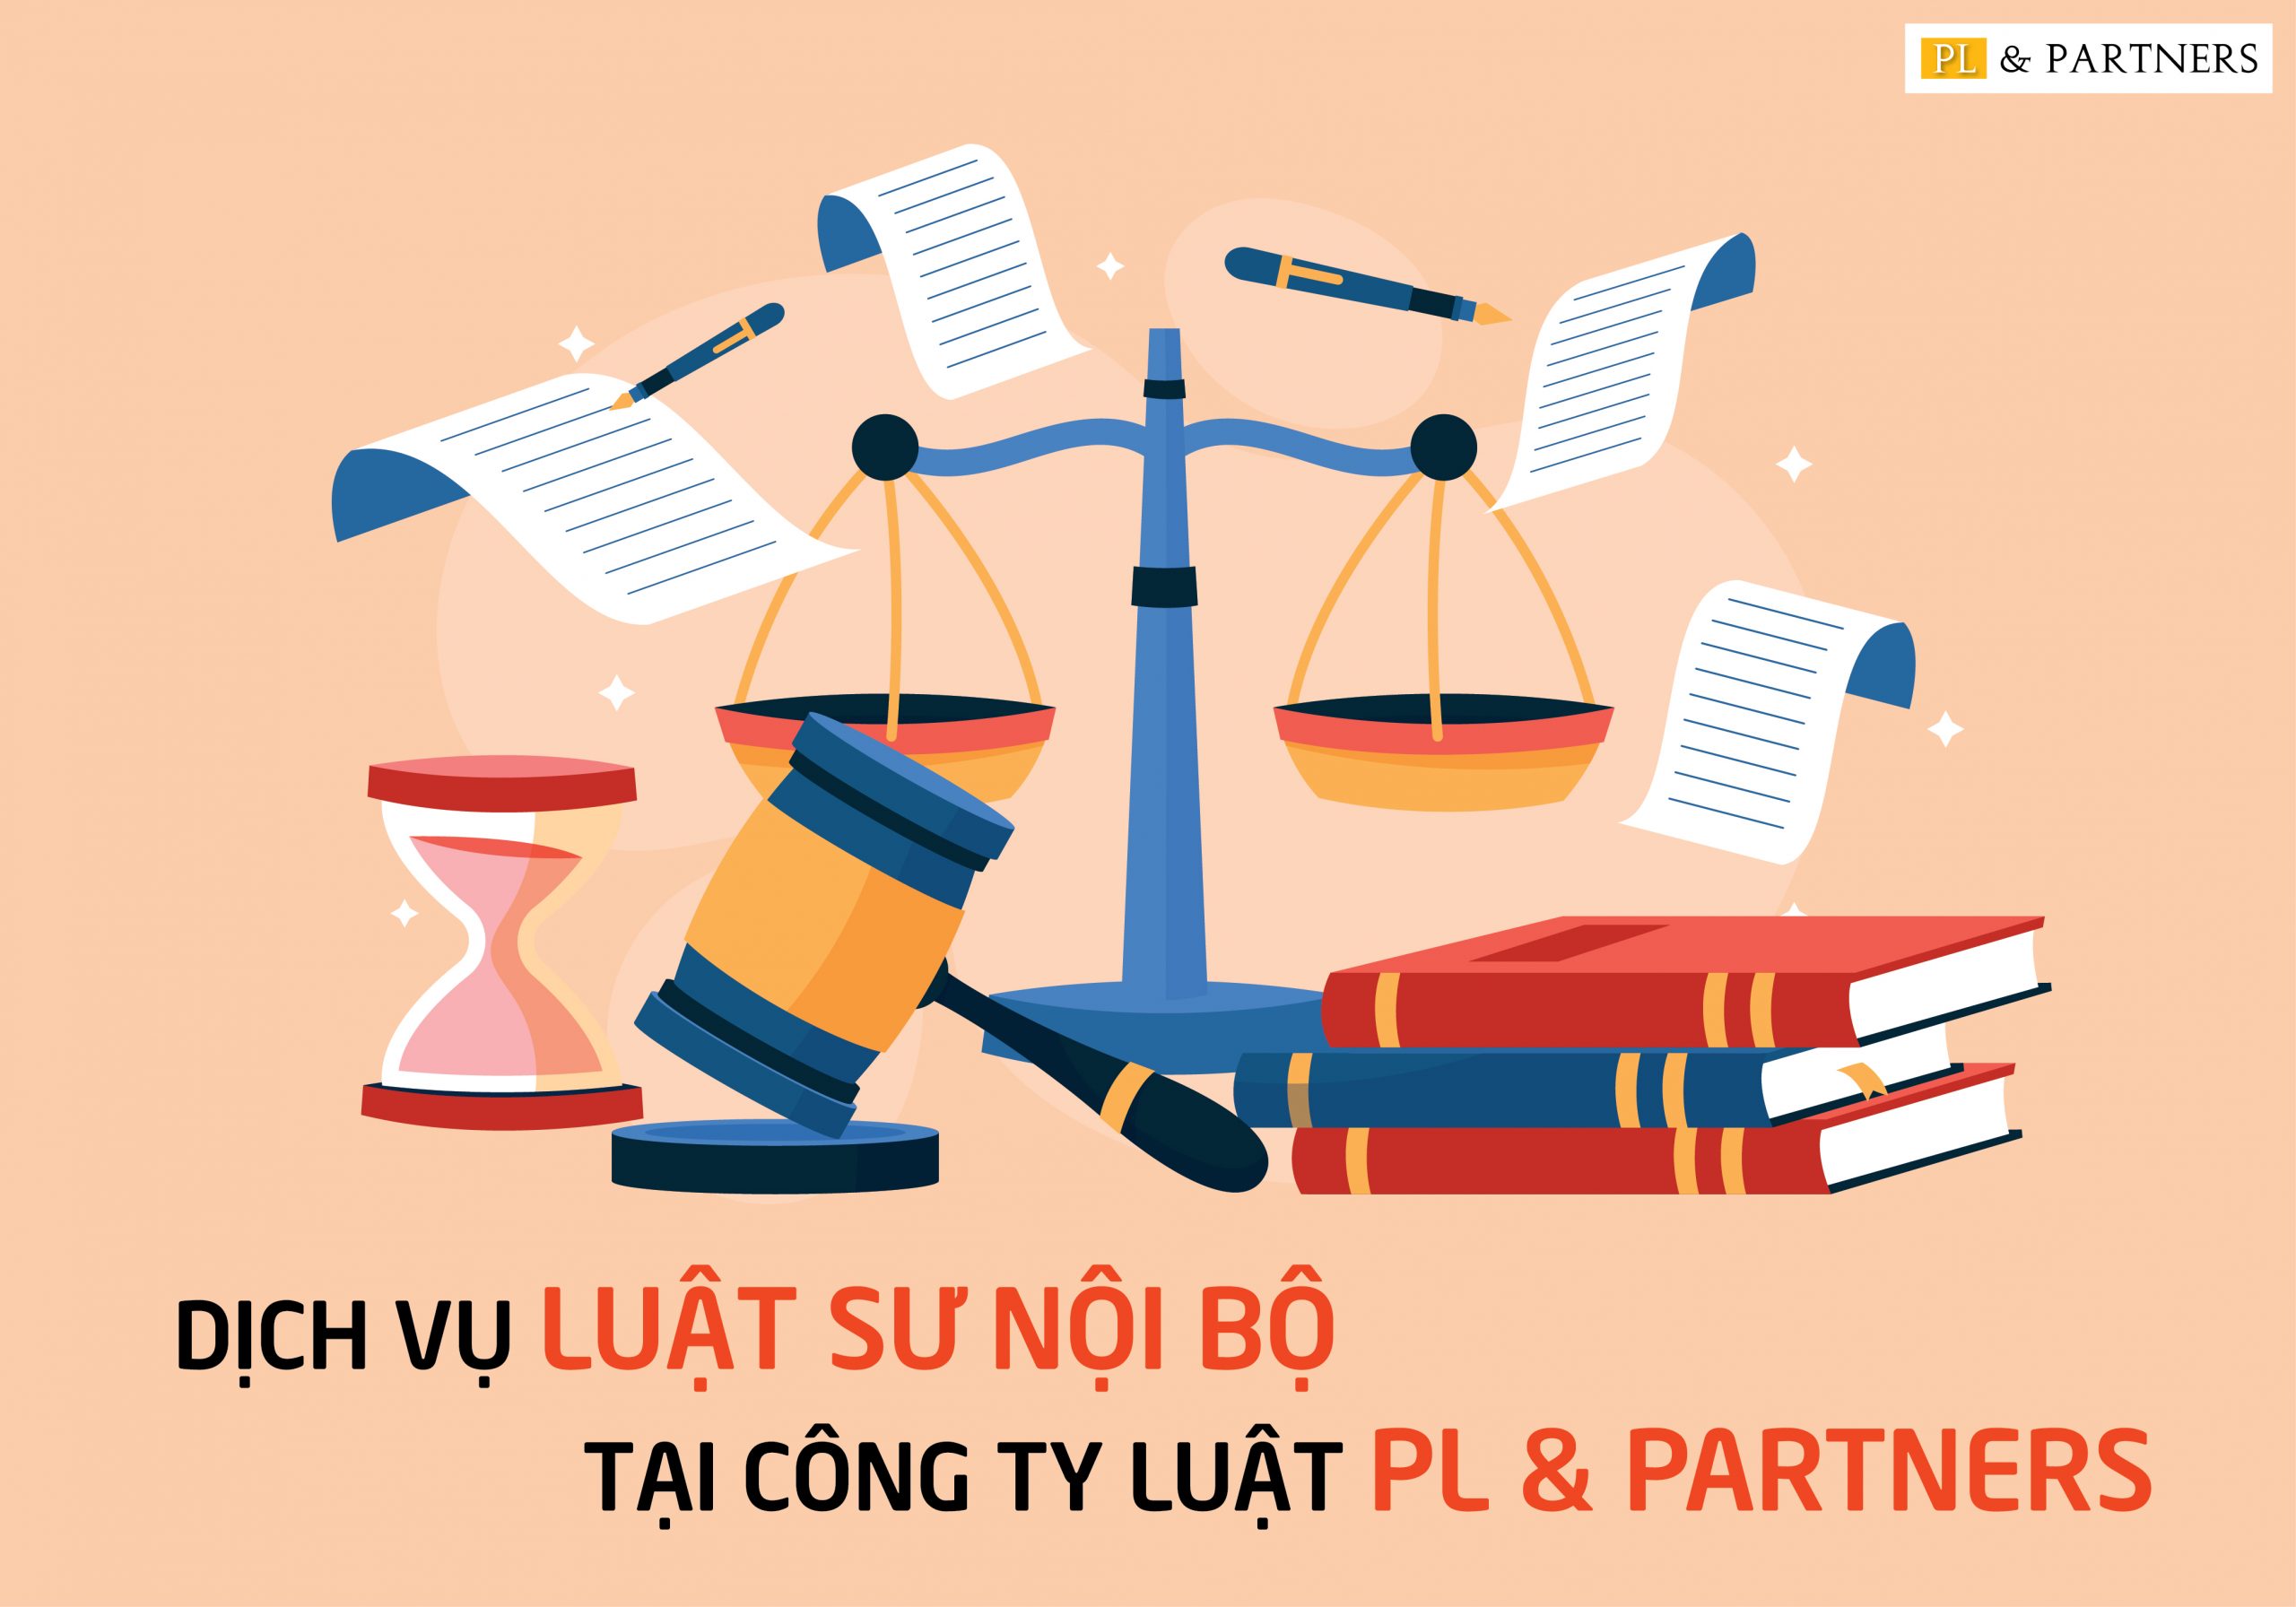 Dịch vụ luật sư nội bộ tại công ty luật PL & Partners